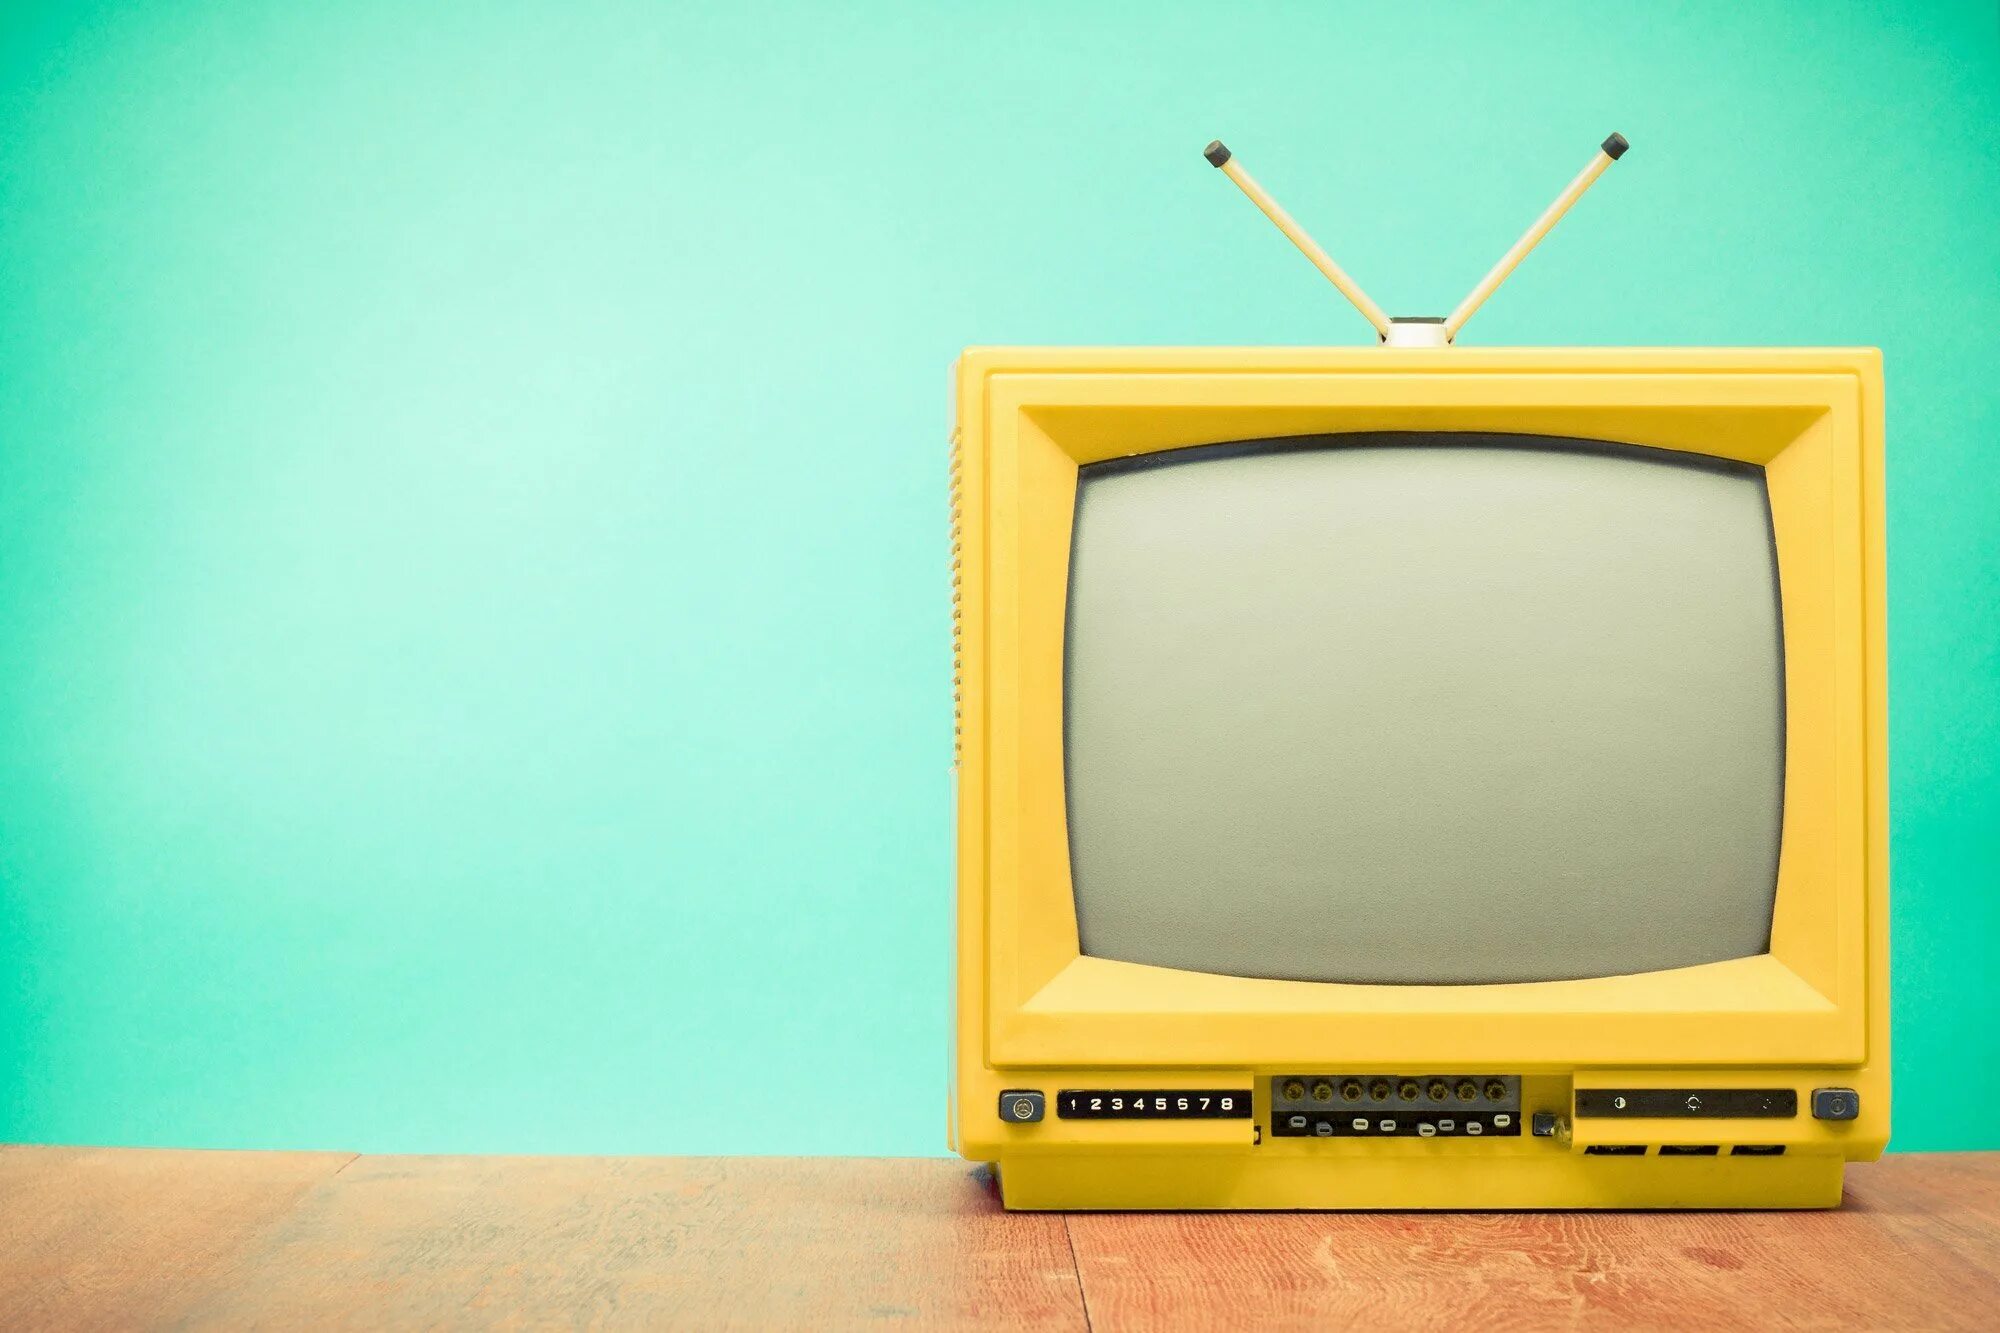 Картинка тв. Желтый телевизор. Телевизор фон. Старый телевизор. Телевизоры 90-х годов.